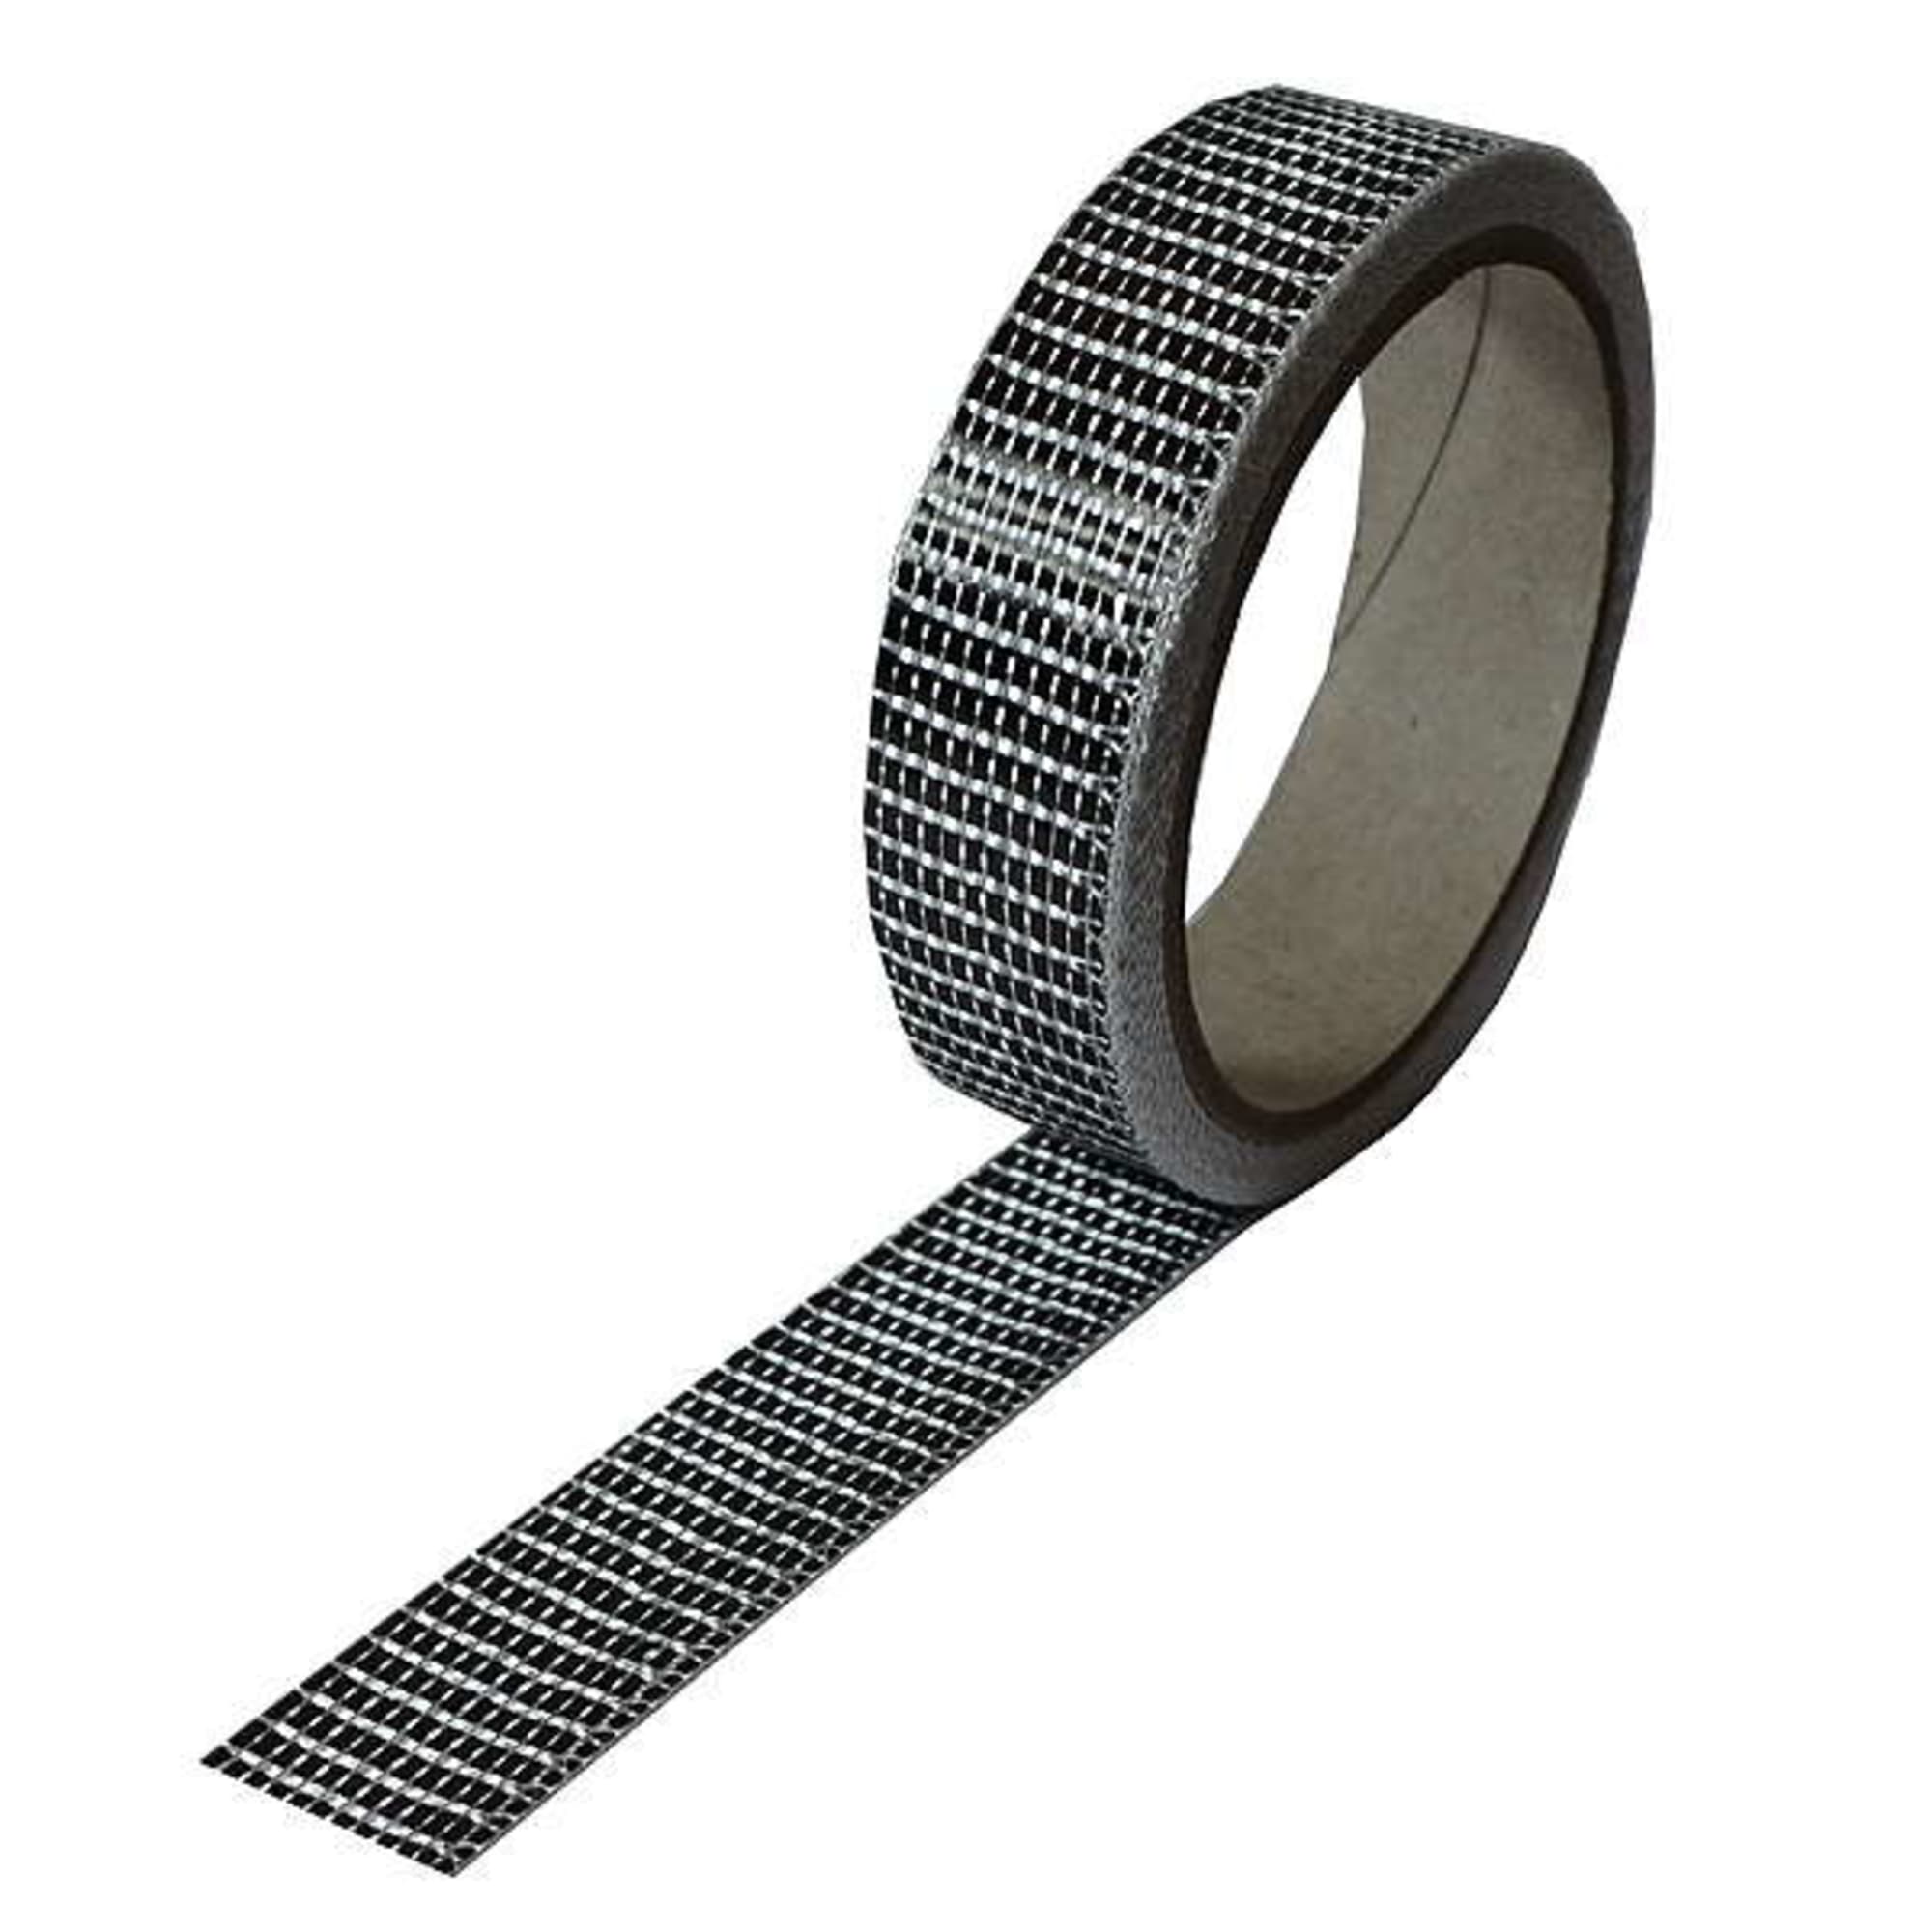 Carbon fibre tape 125 g/m² (unidirectional) 25 mm